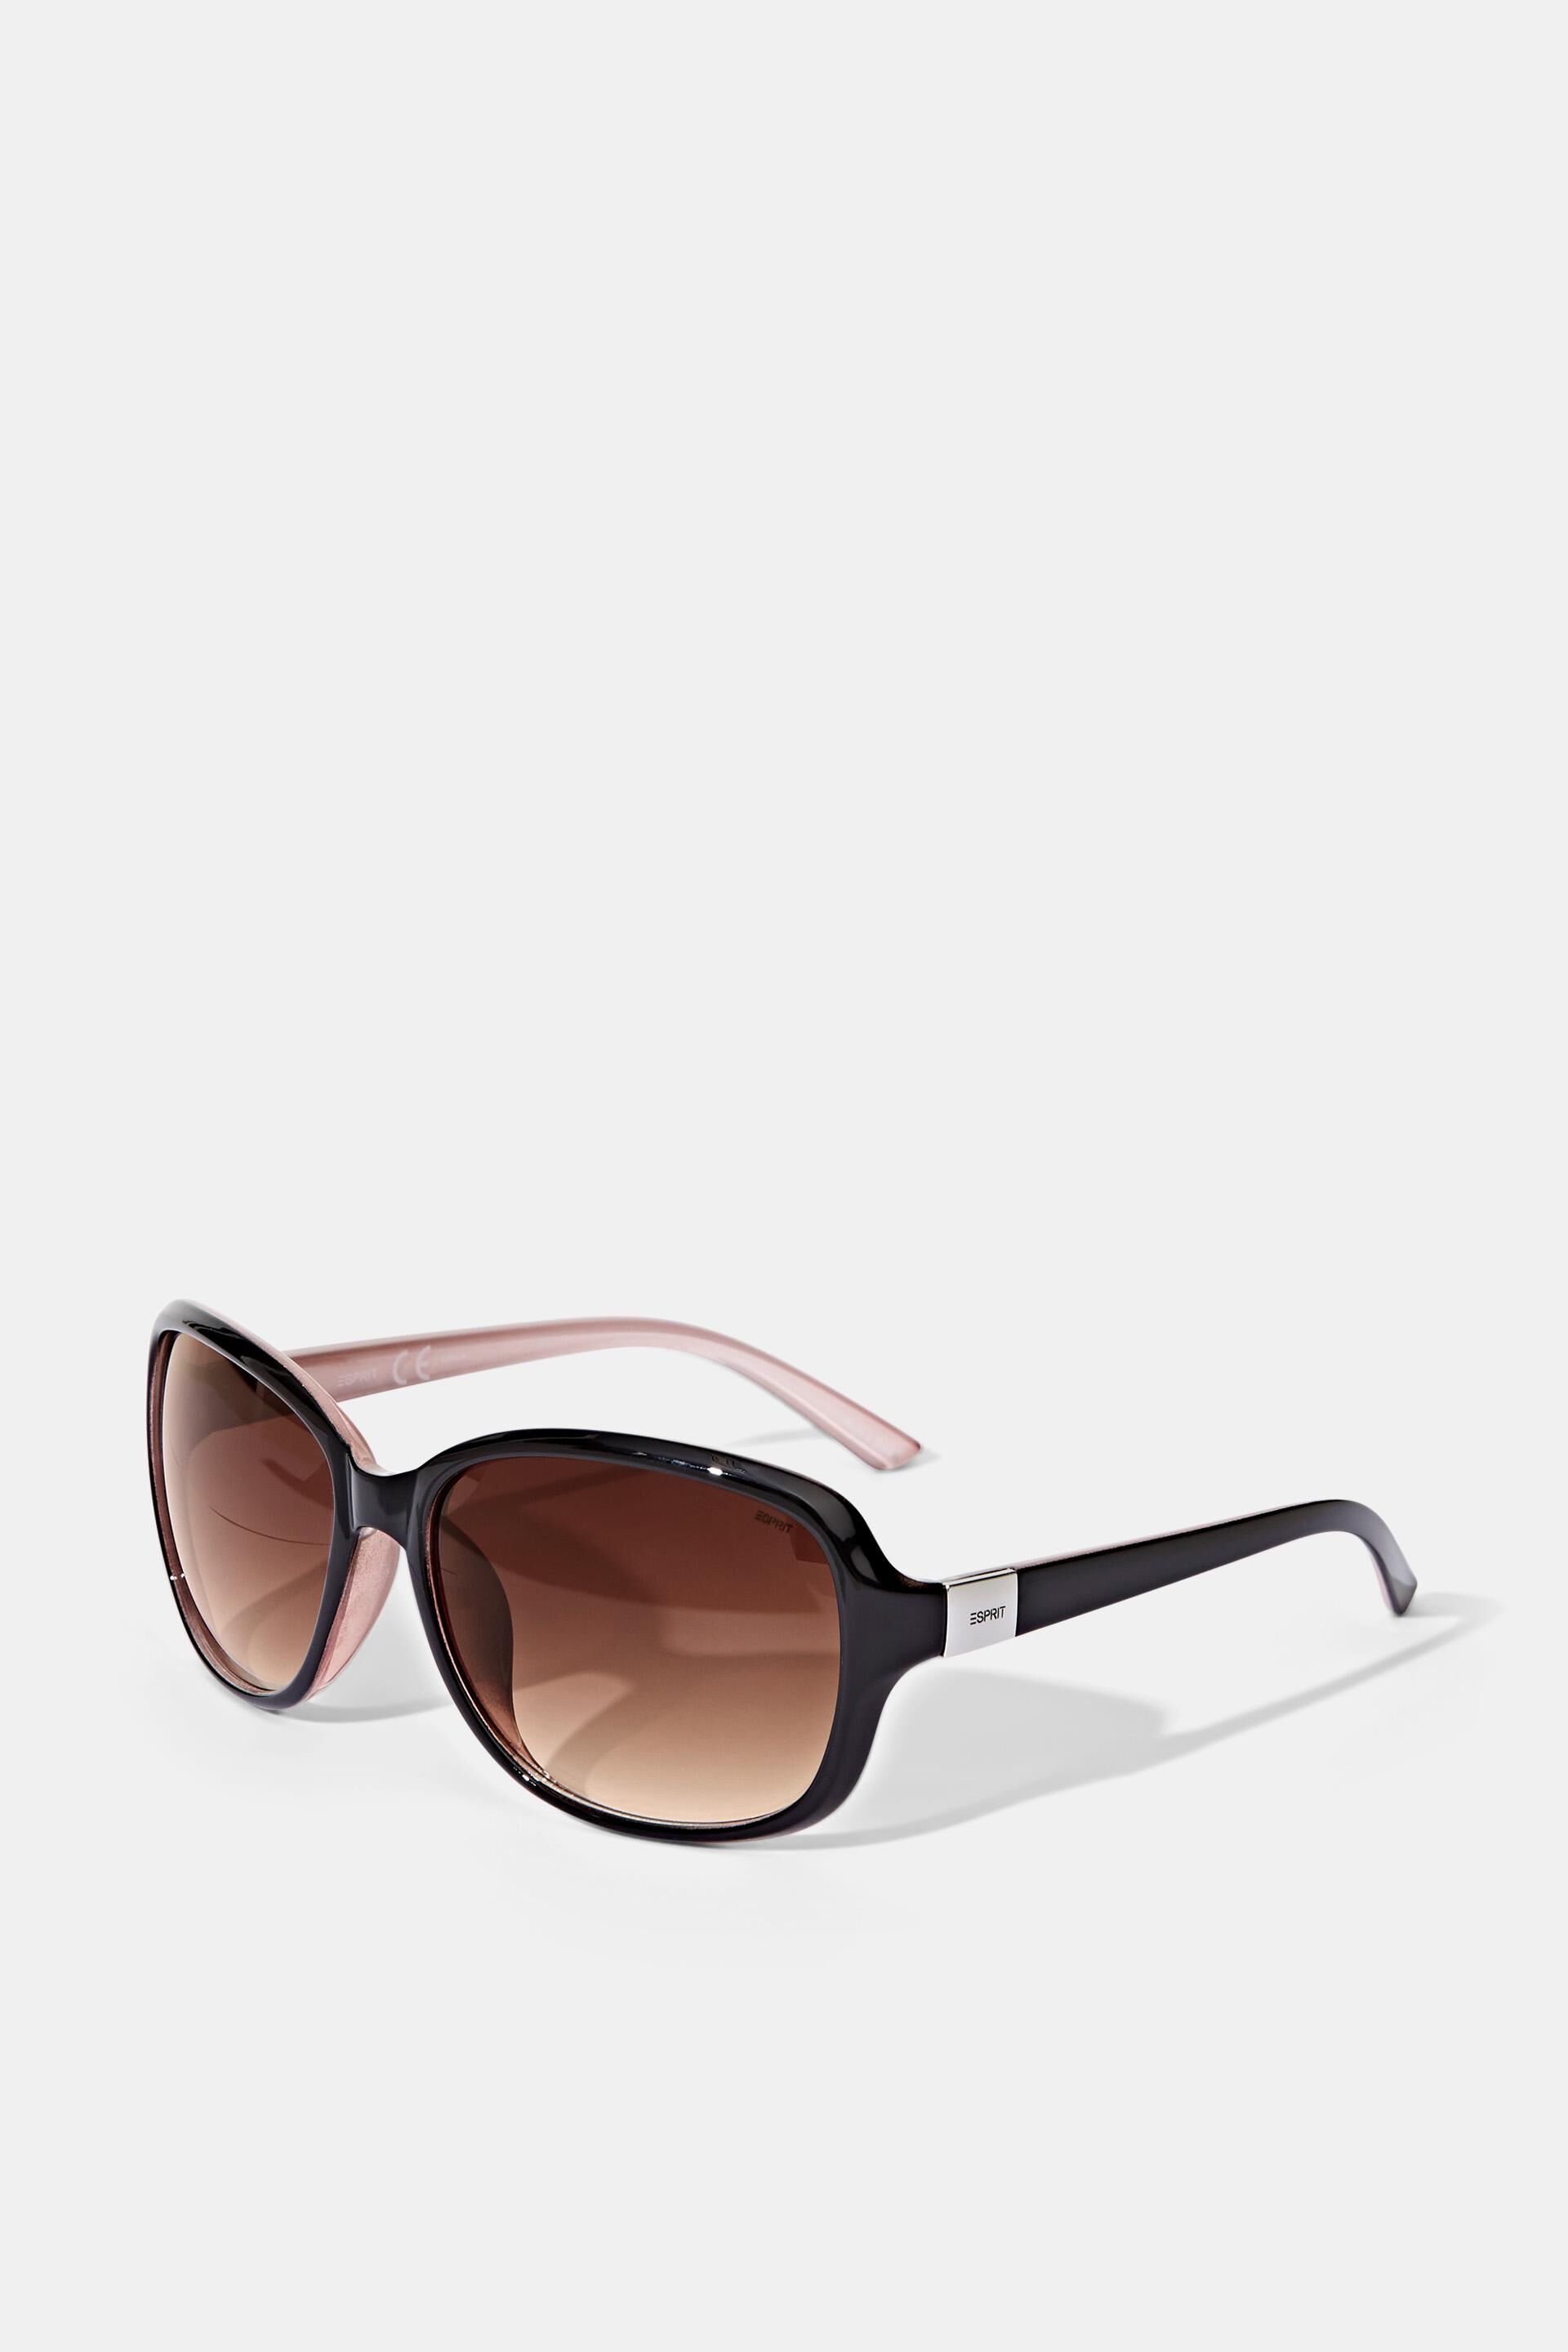 Esprit Online Store Sonnenbrille mit zeitlosem Design